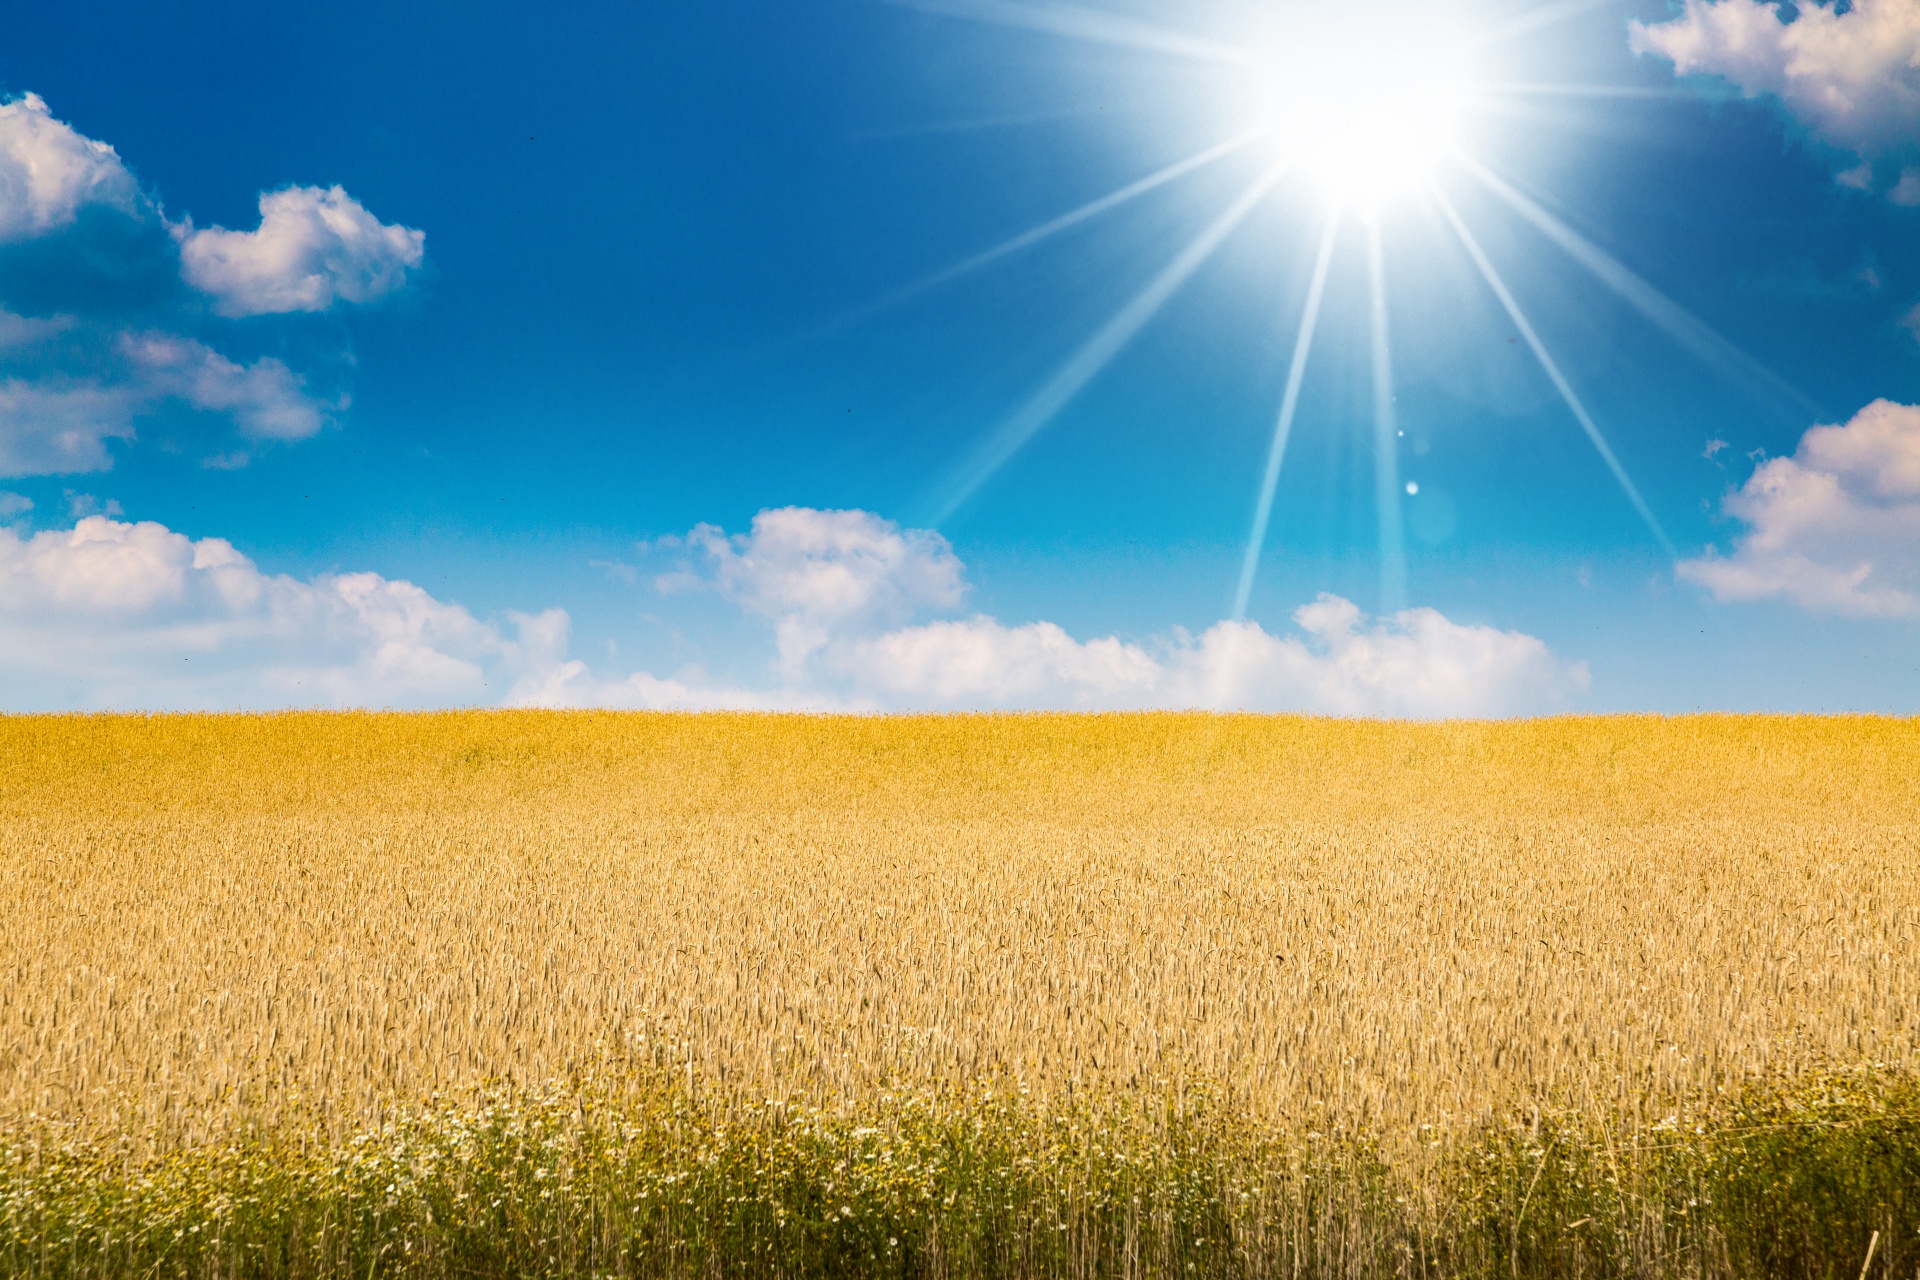 Гори солнце ярче лето будет. Пшеничное поле. Солнечное небо. Солнечное поле. Фон поле.